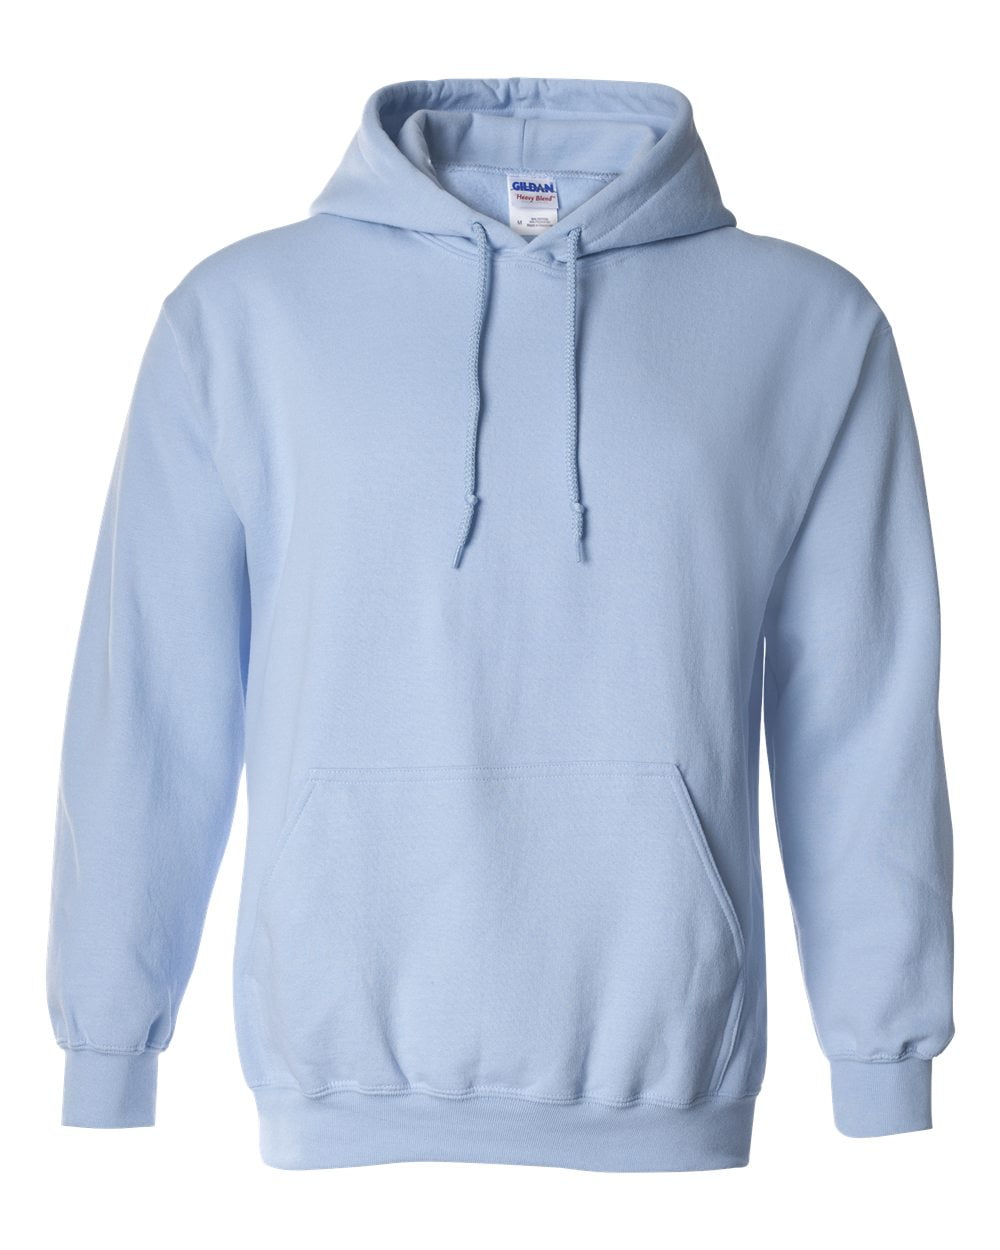 Men's Plain Pullover Hoodie Gildan Heavy Blend Unisex Adult Hooded Sweatshirt